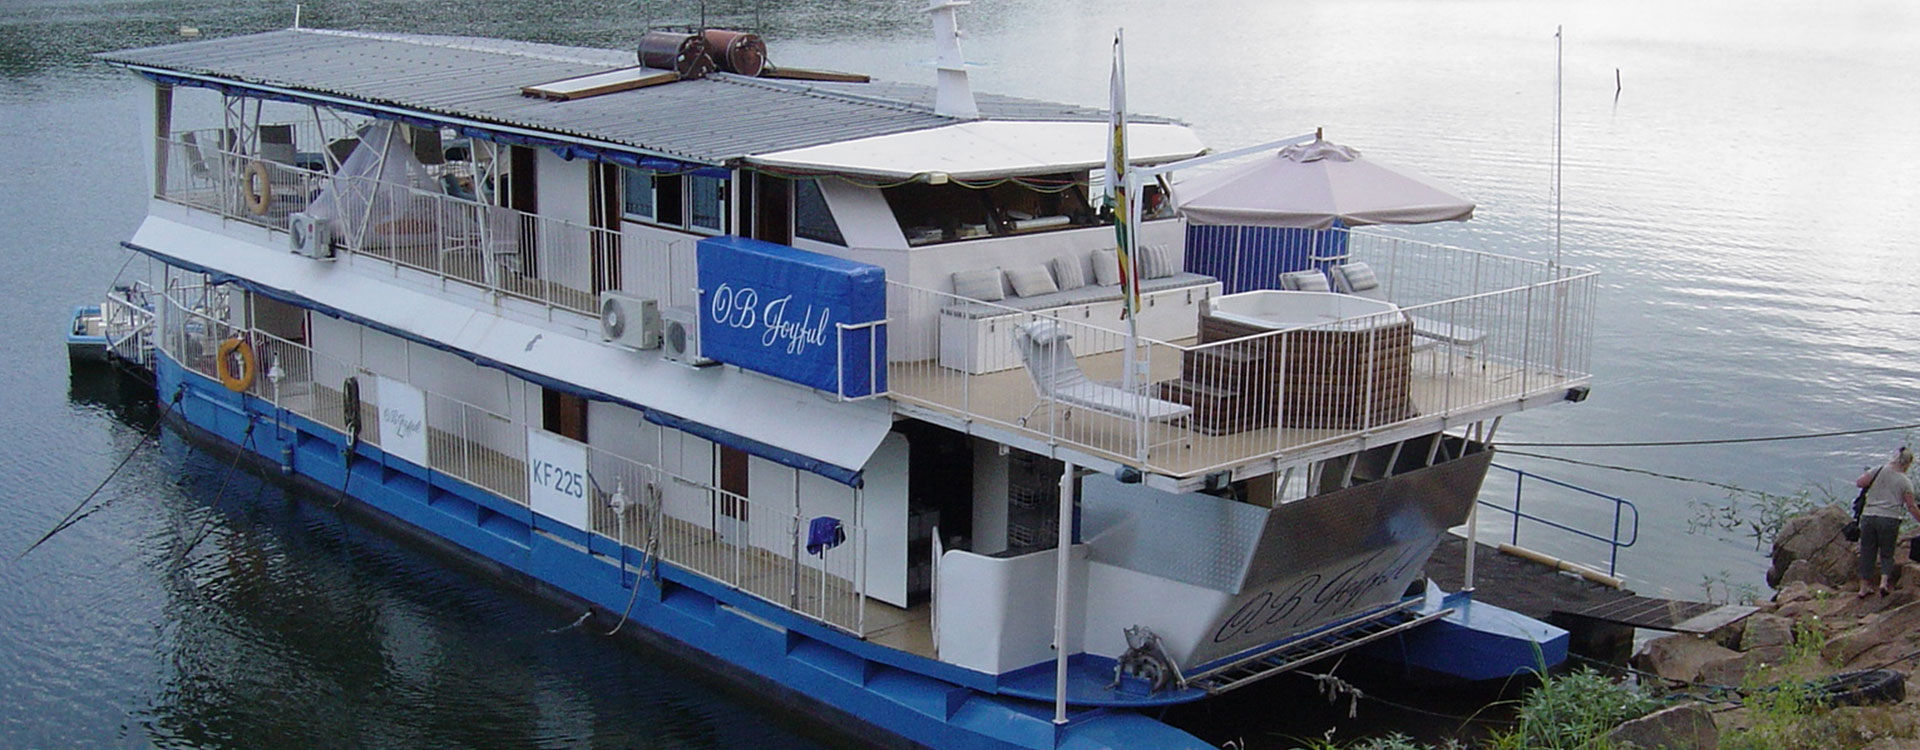 OB Joyful Houseboat